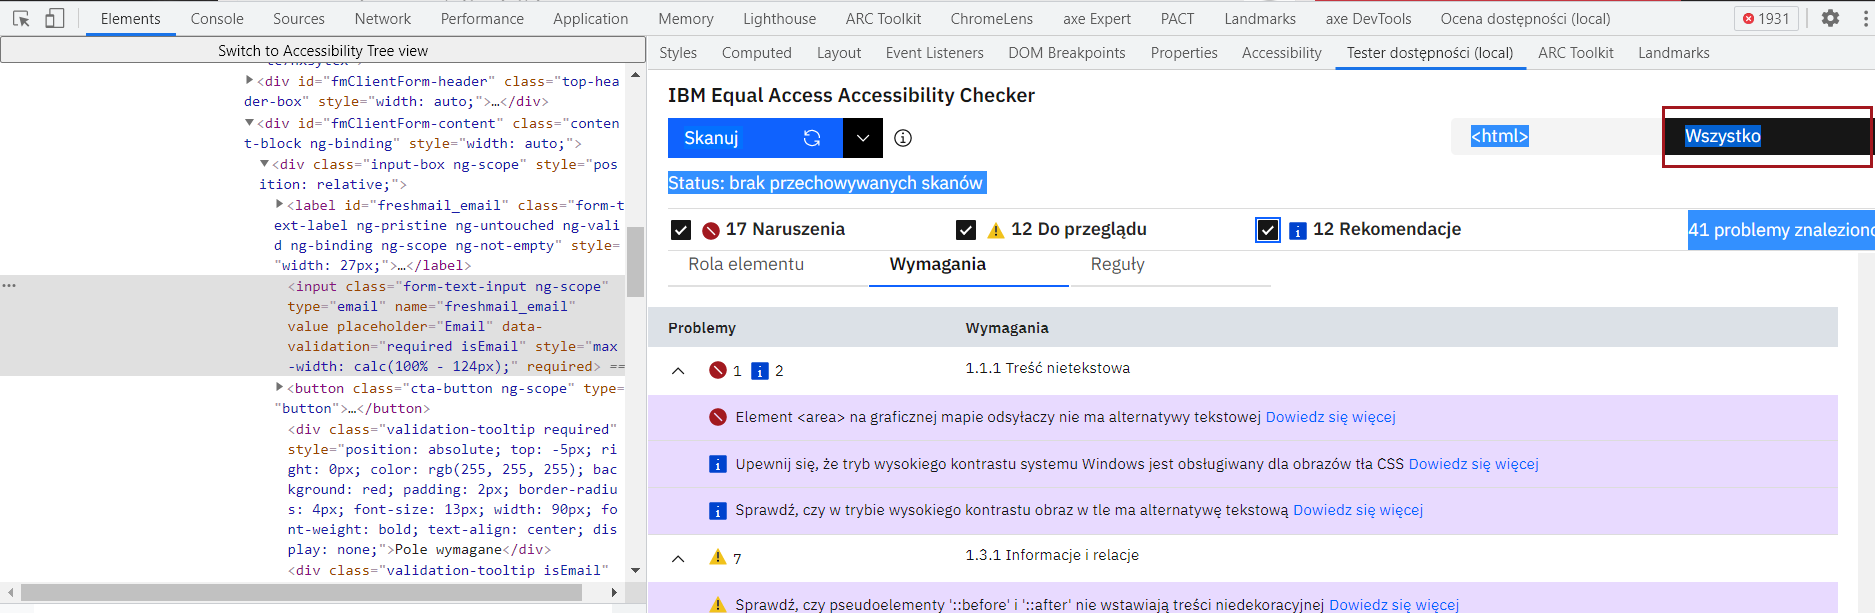 Zrzut ekranu narzędzia Accessibility Checker - widok główny z wszystkimi problemami